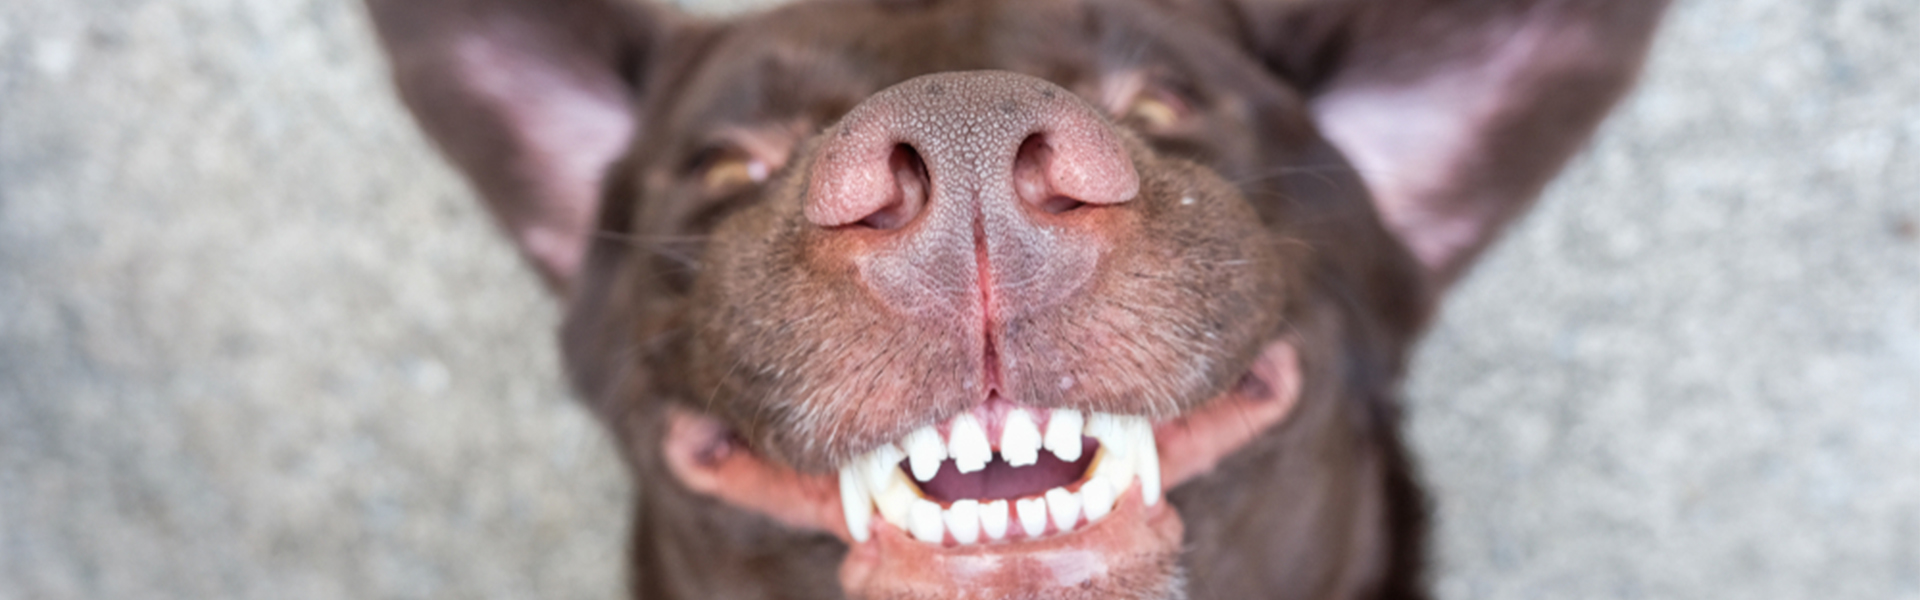 Rens din hunds tænder uden at dem: En guide